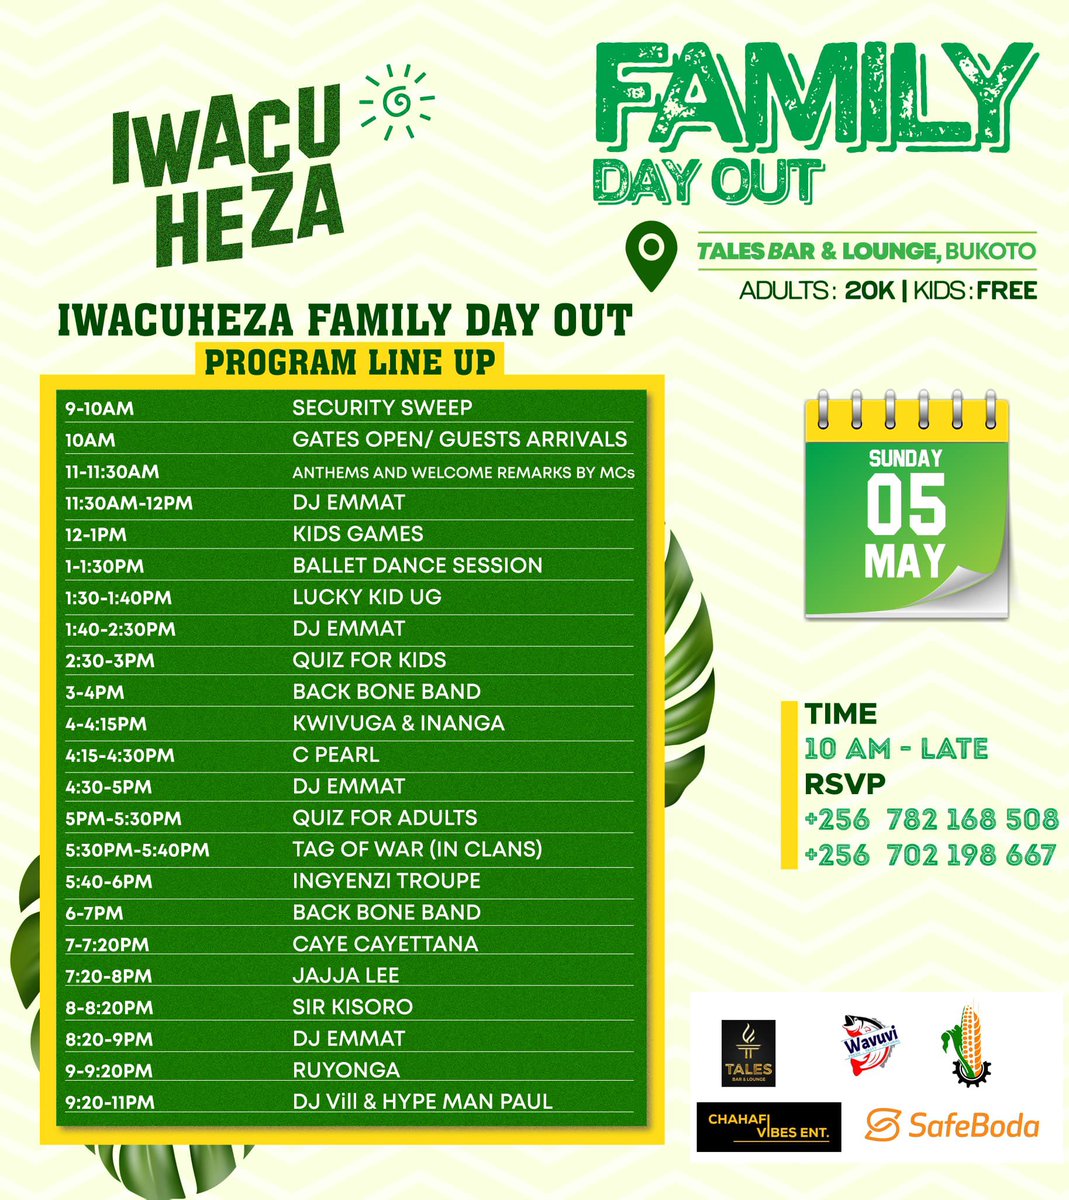 Our Program line-up this Sunday ✅

#FamilyDayOut 
#IwacuHeza 
#TweseTuribamwe